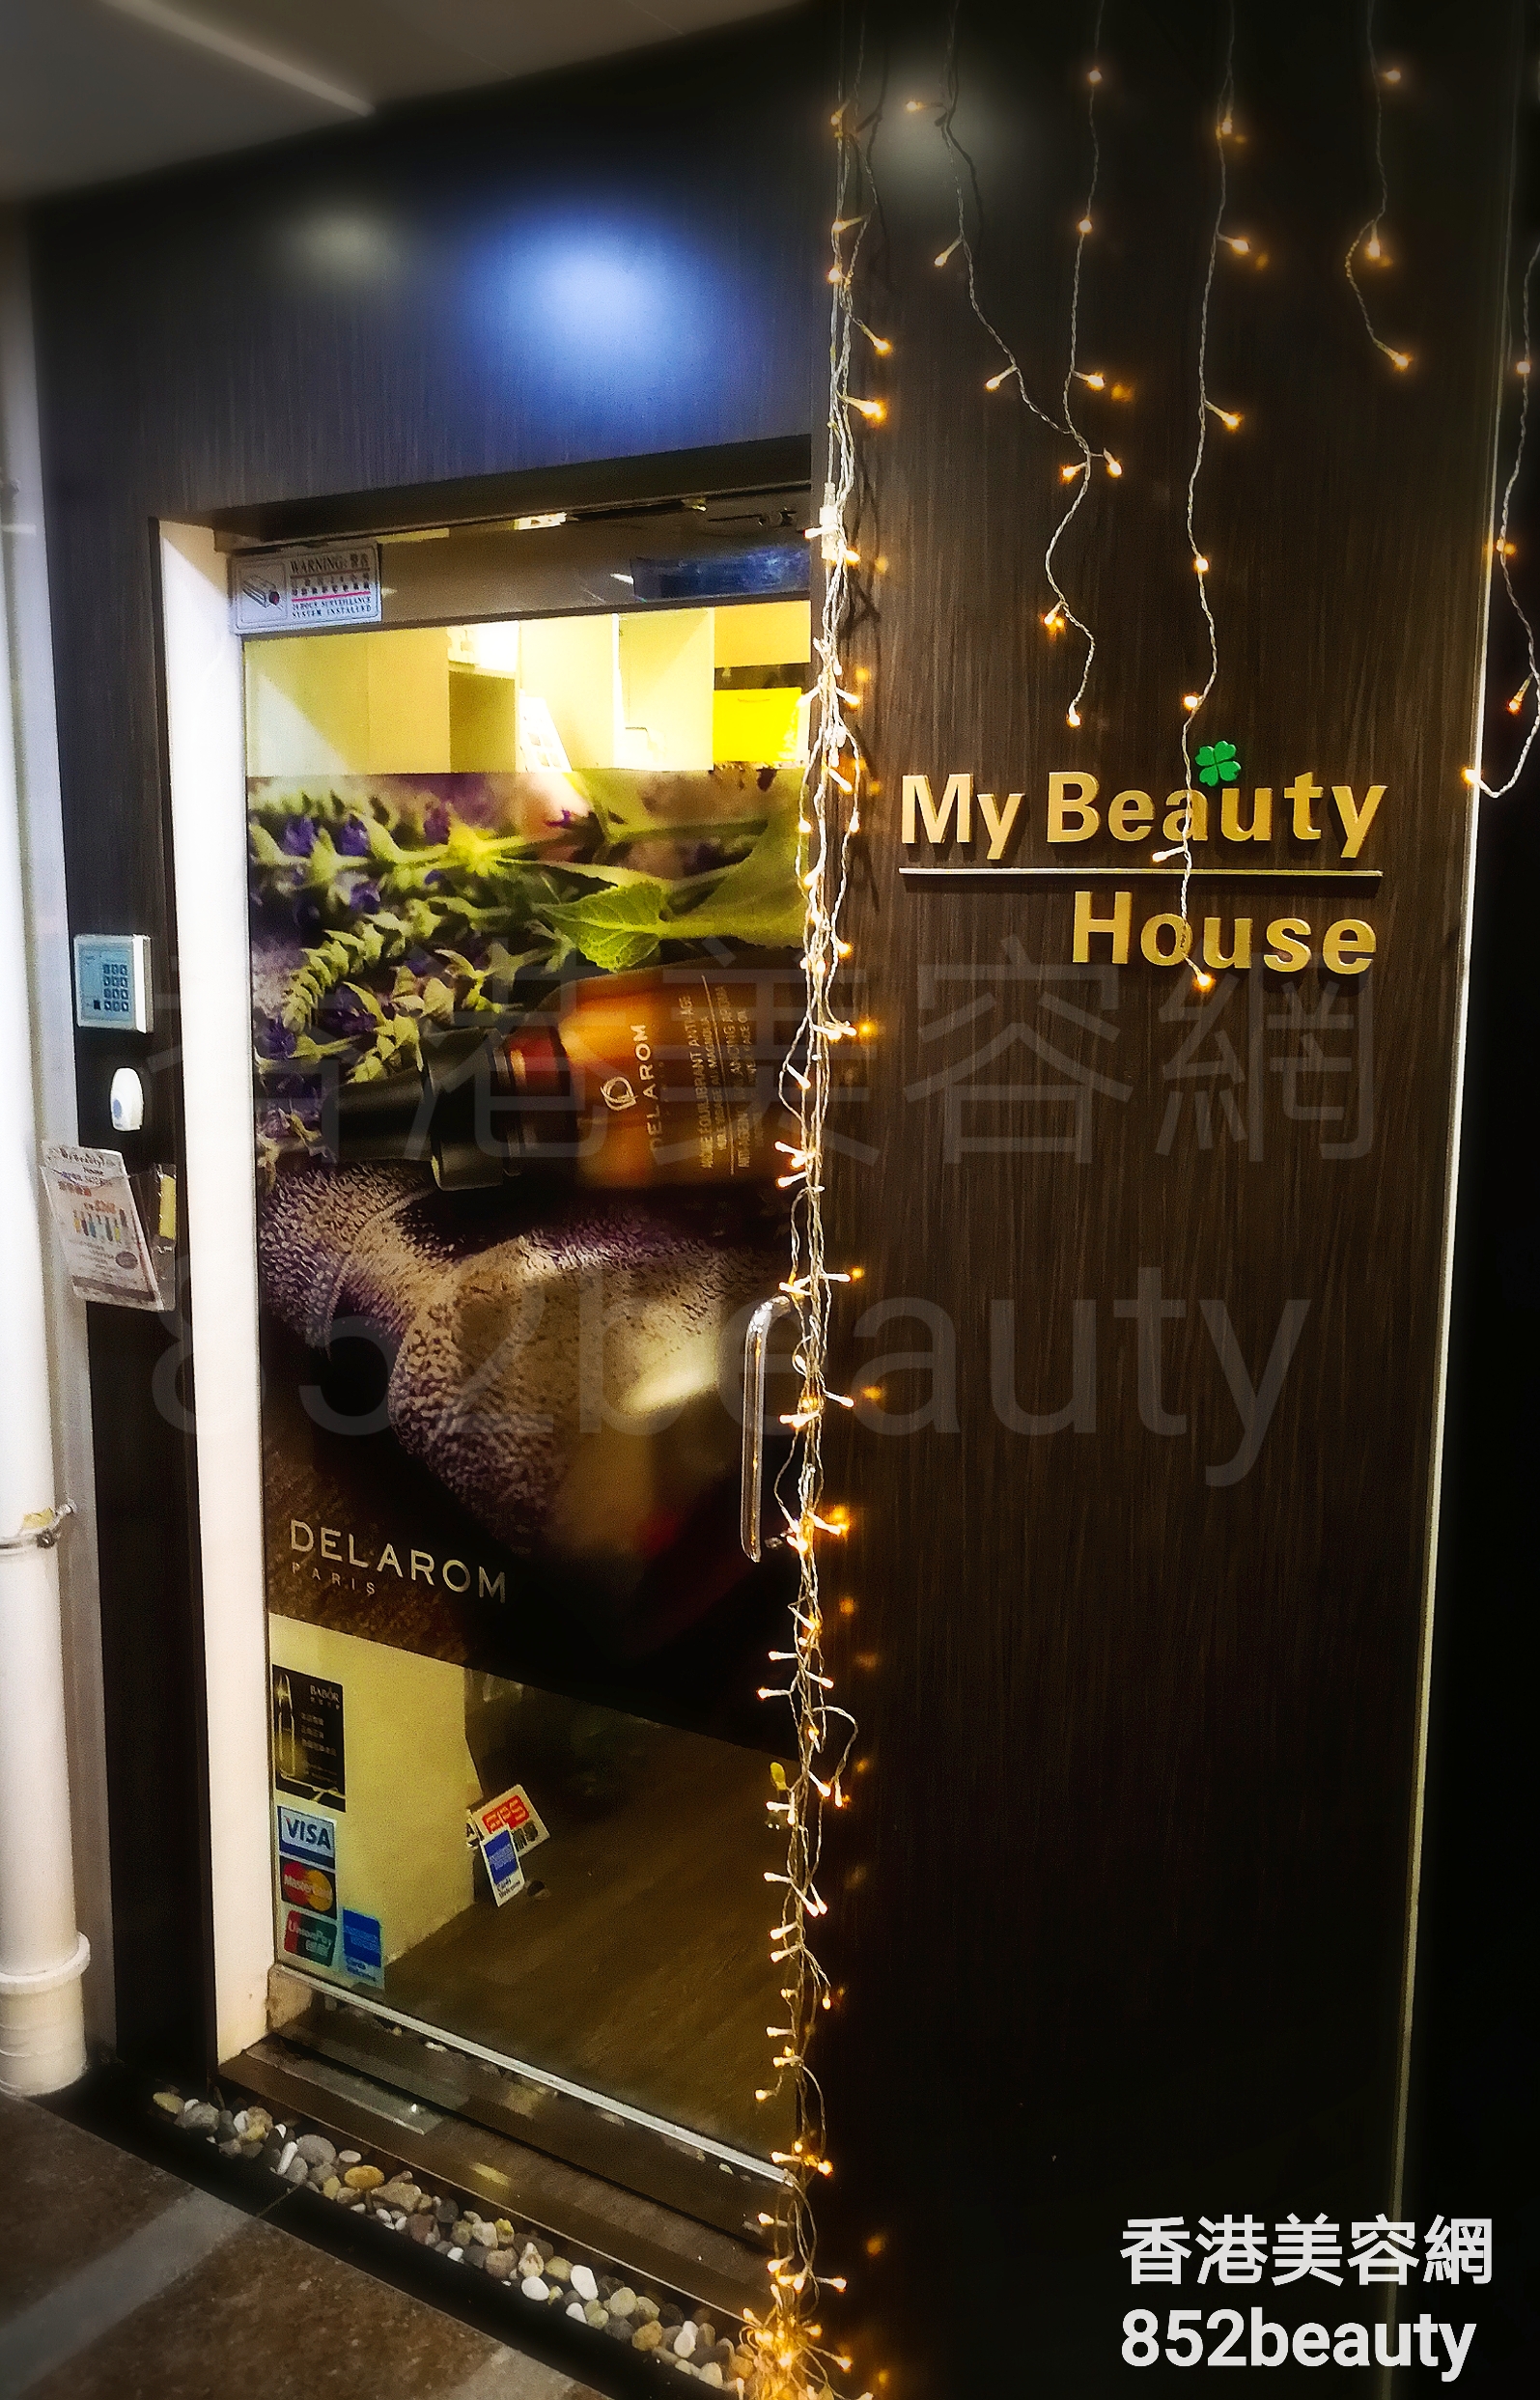 脱毛: My Beauty House